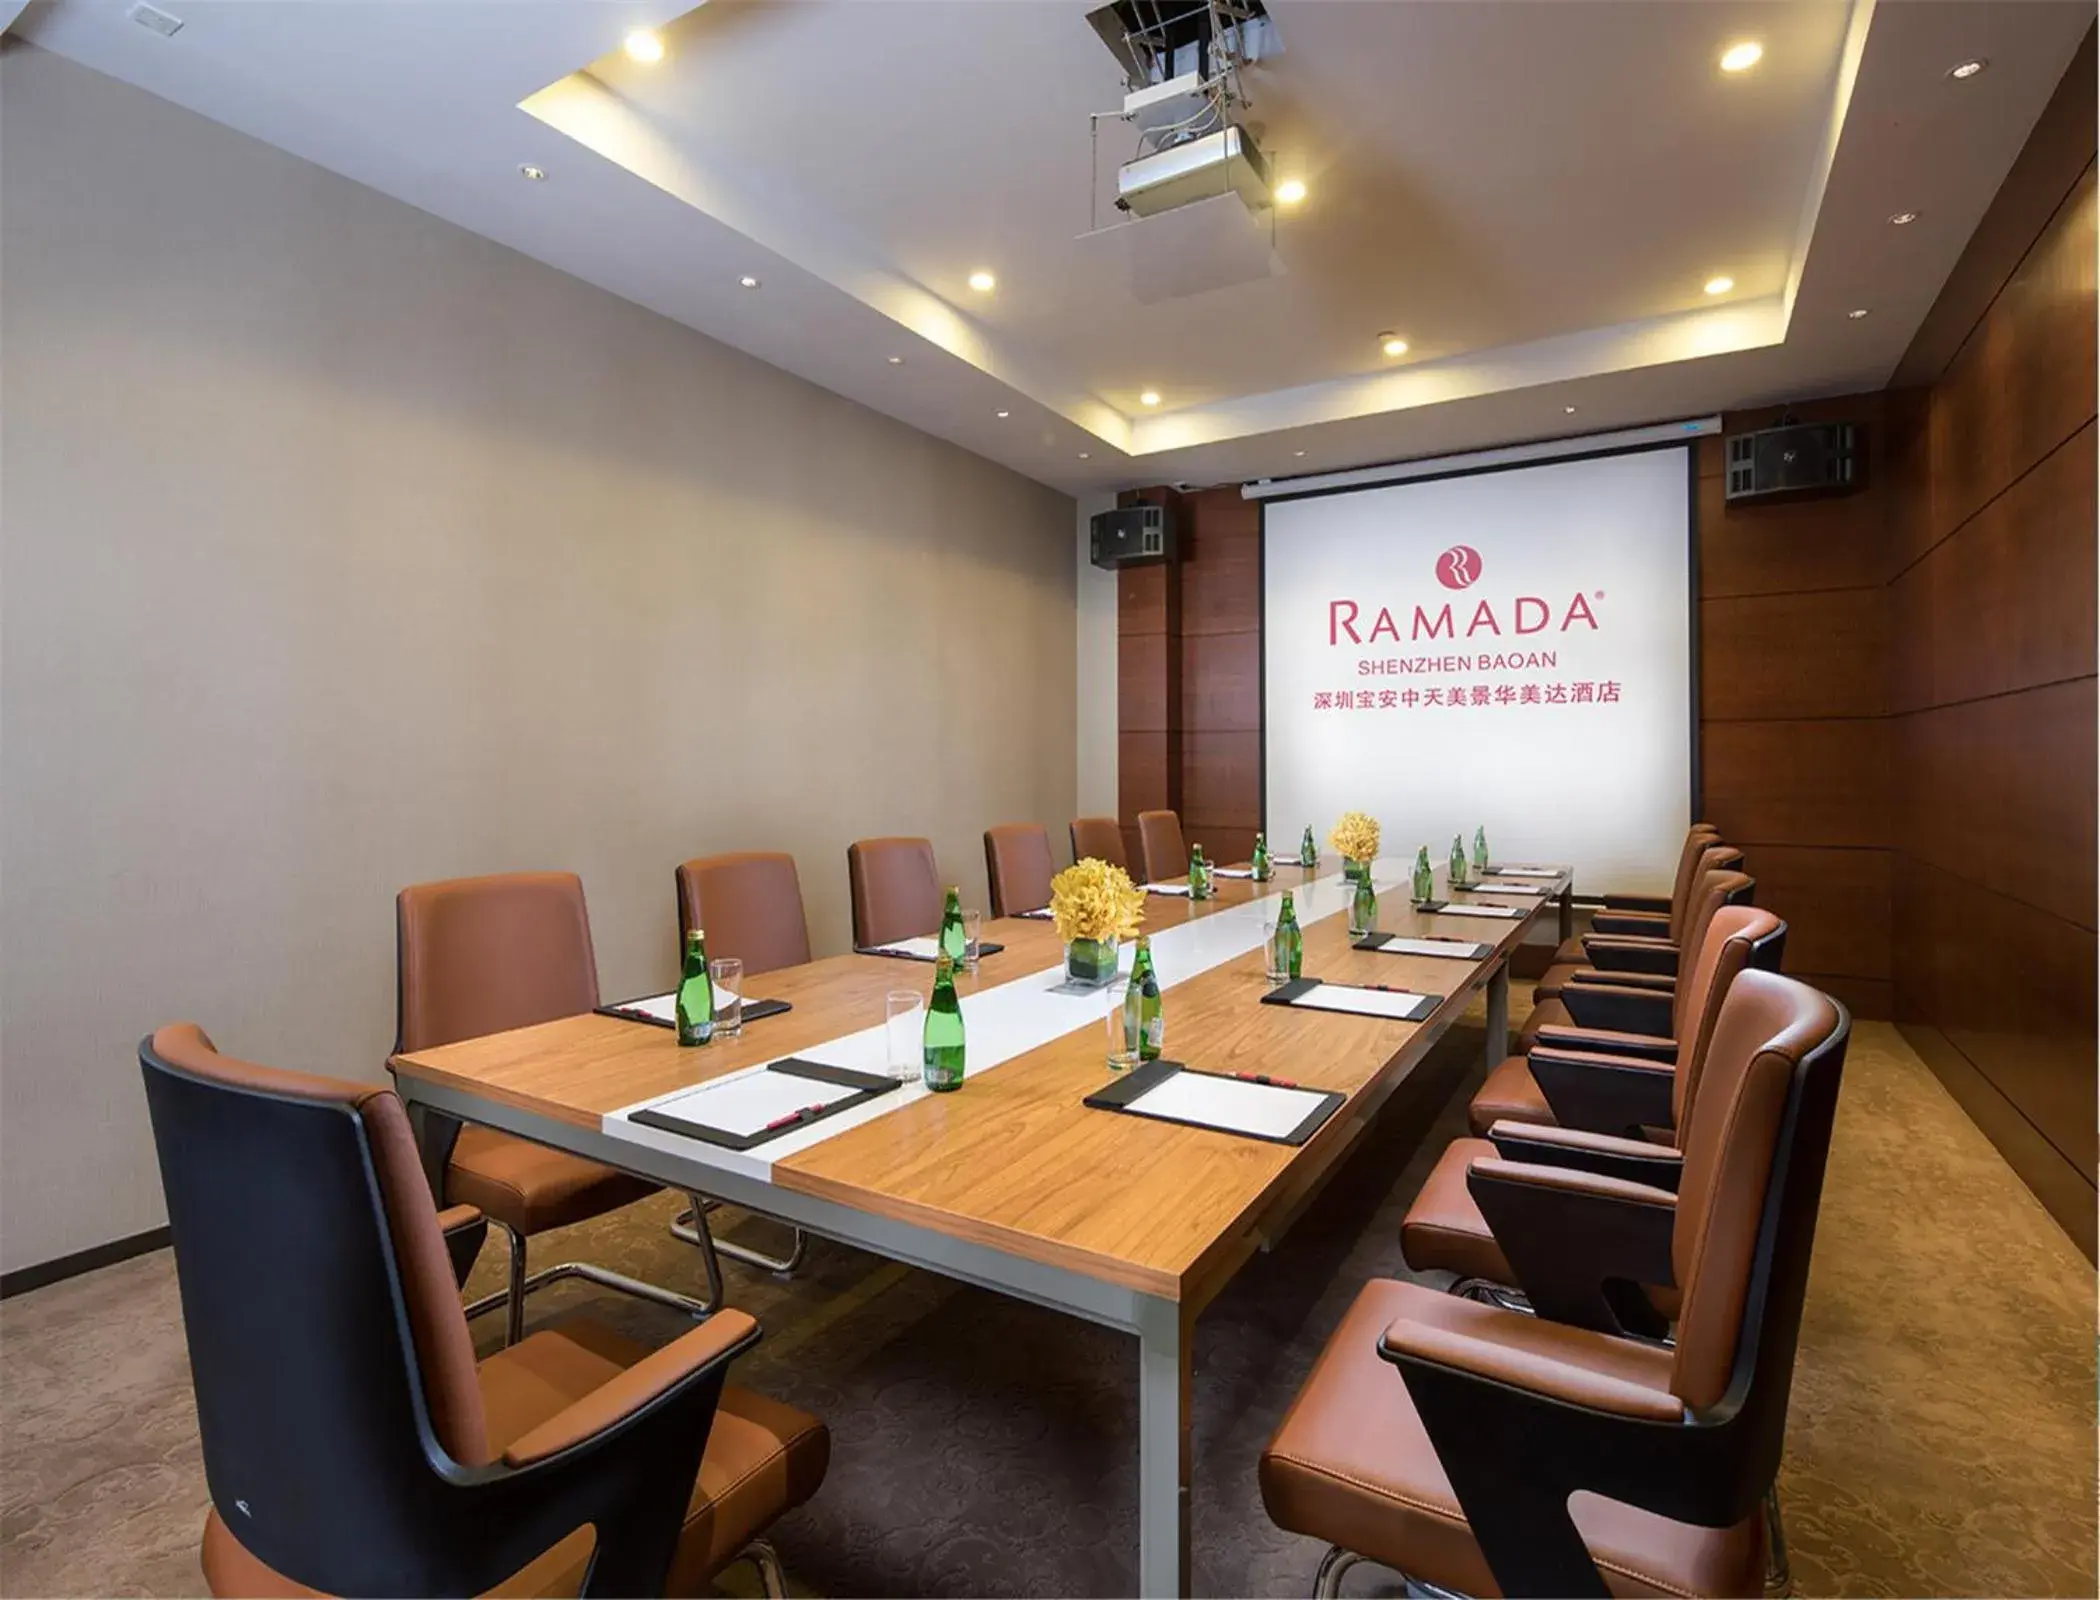 Banquet/Function facilities in Ramada Shenzhen Baoan